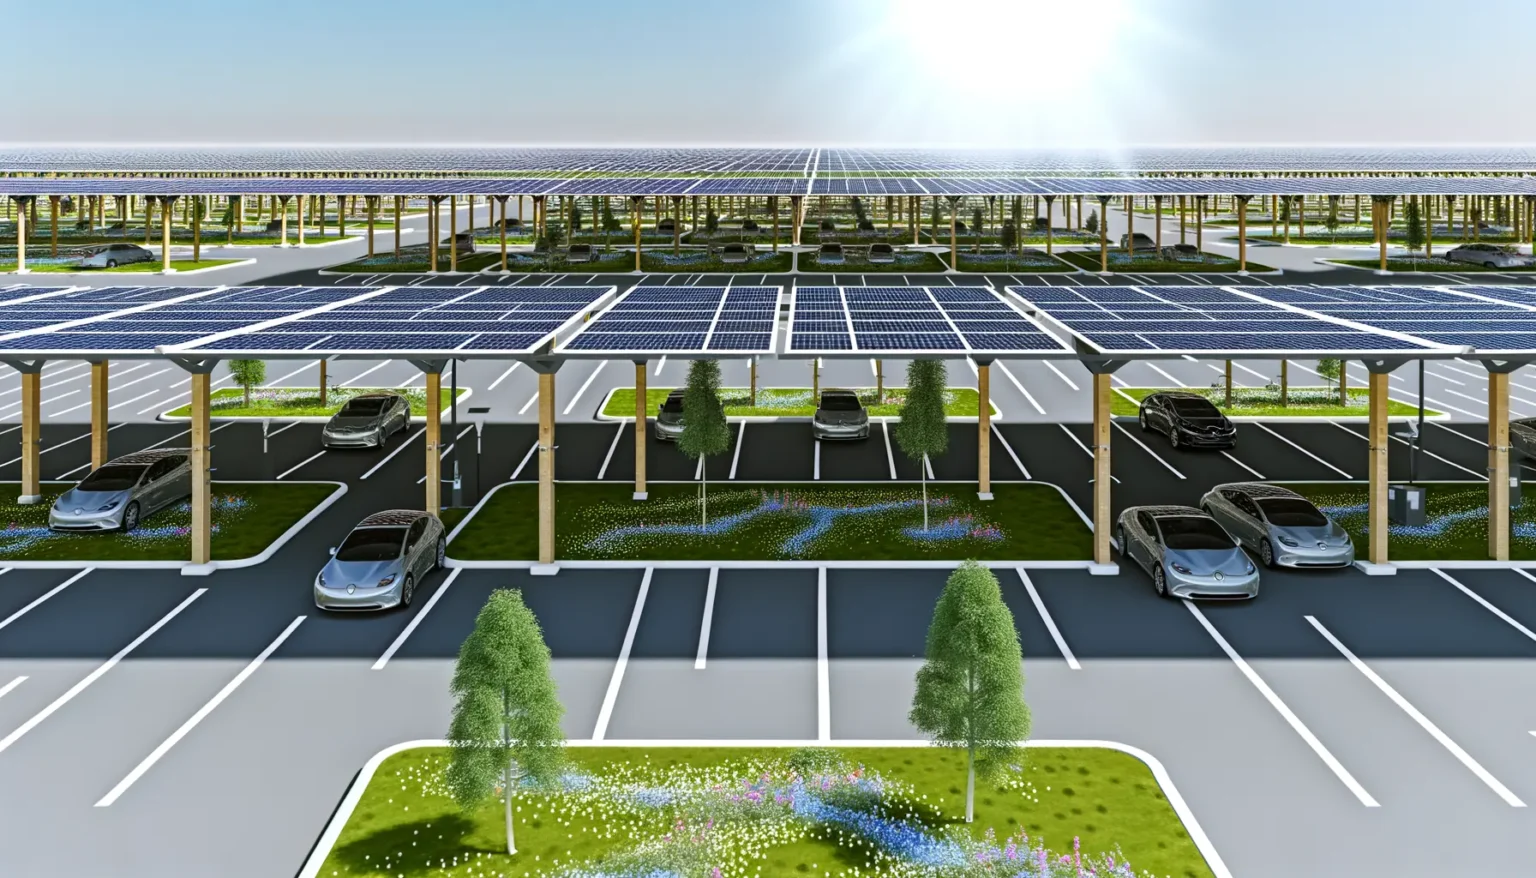 Ein großflächiger Parkplatz mit zahlreichen Autos bedeckt von einer Überdachung mit Solarpaneelen, umgeben von Grünflächen und Bäumen, unter einem klaren, blauen Himmel mit der Sonne am oberen Bildrand.